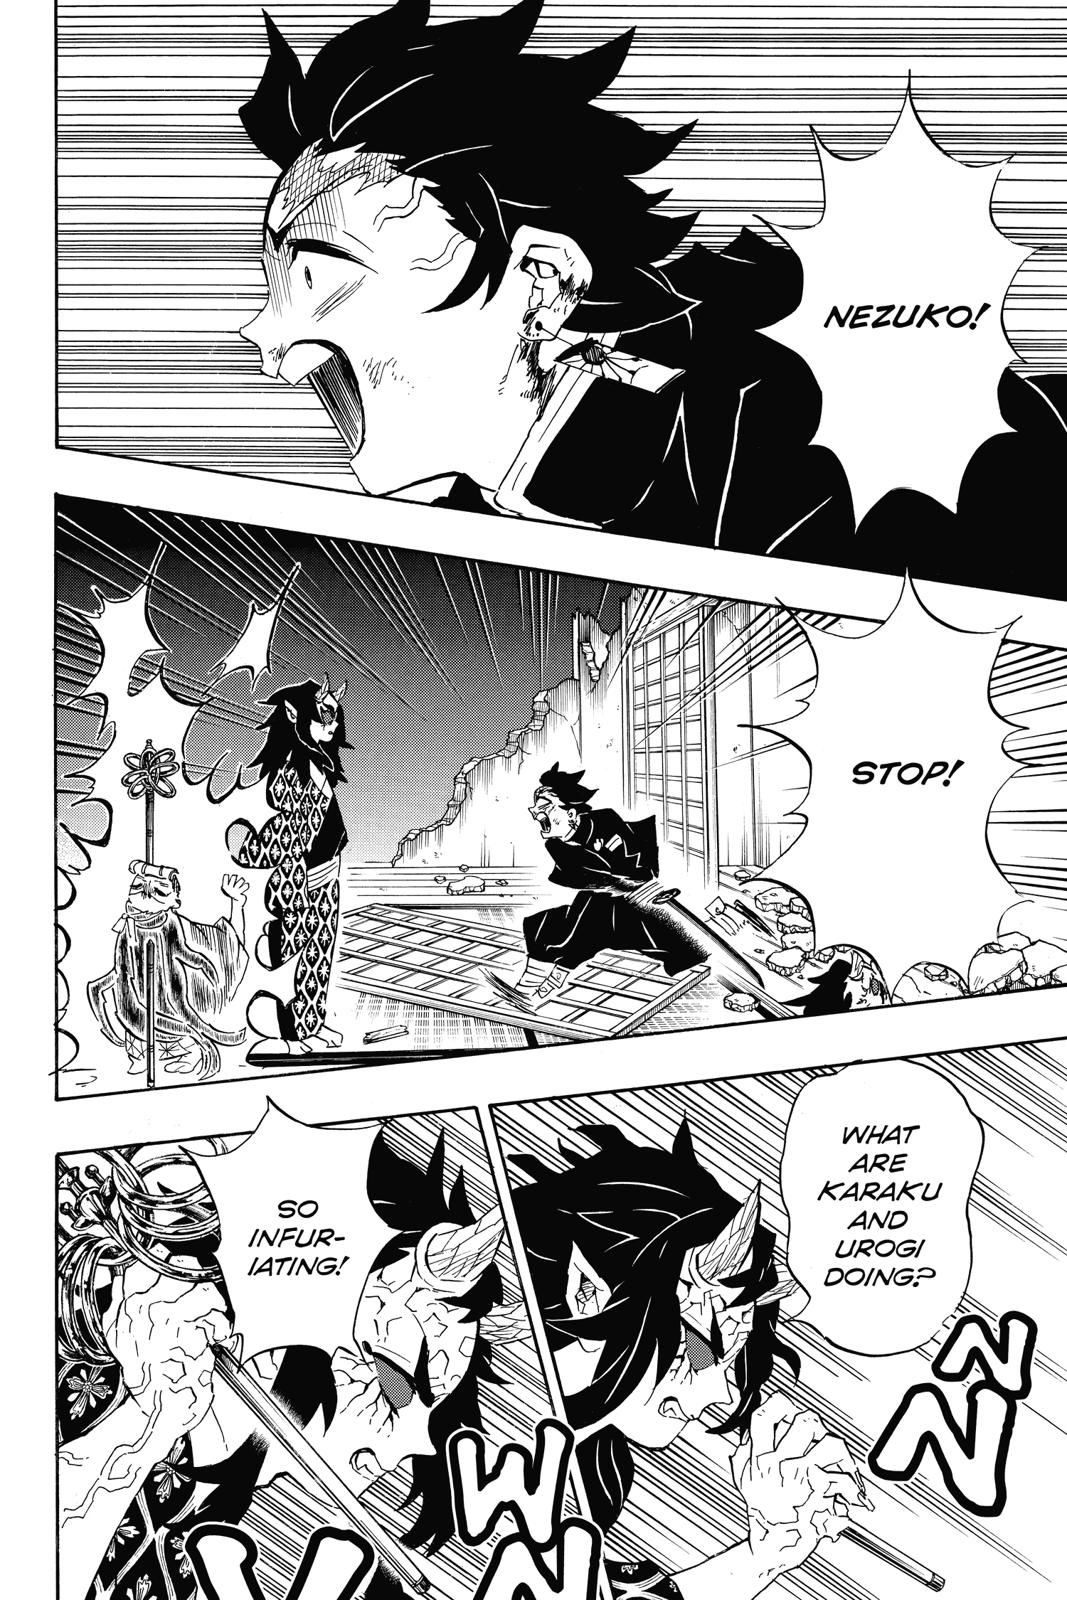 Demon Slayer Manga Manga Chapter - 110 - image 6